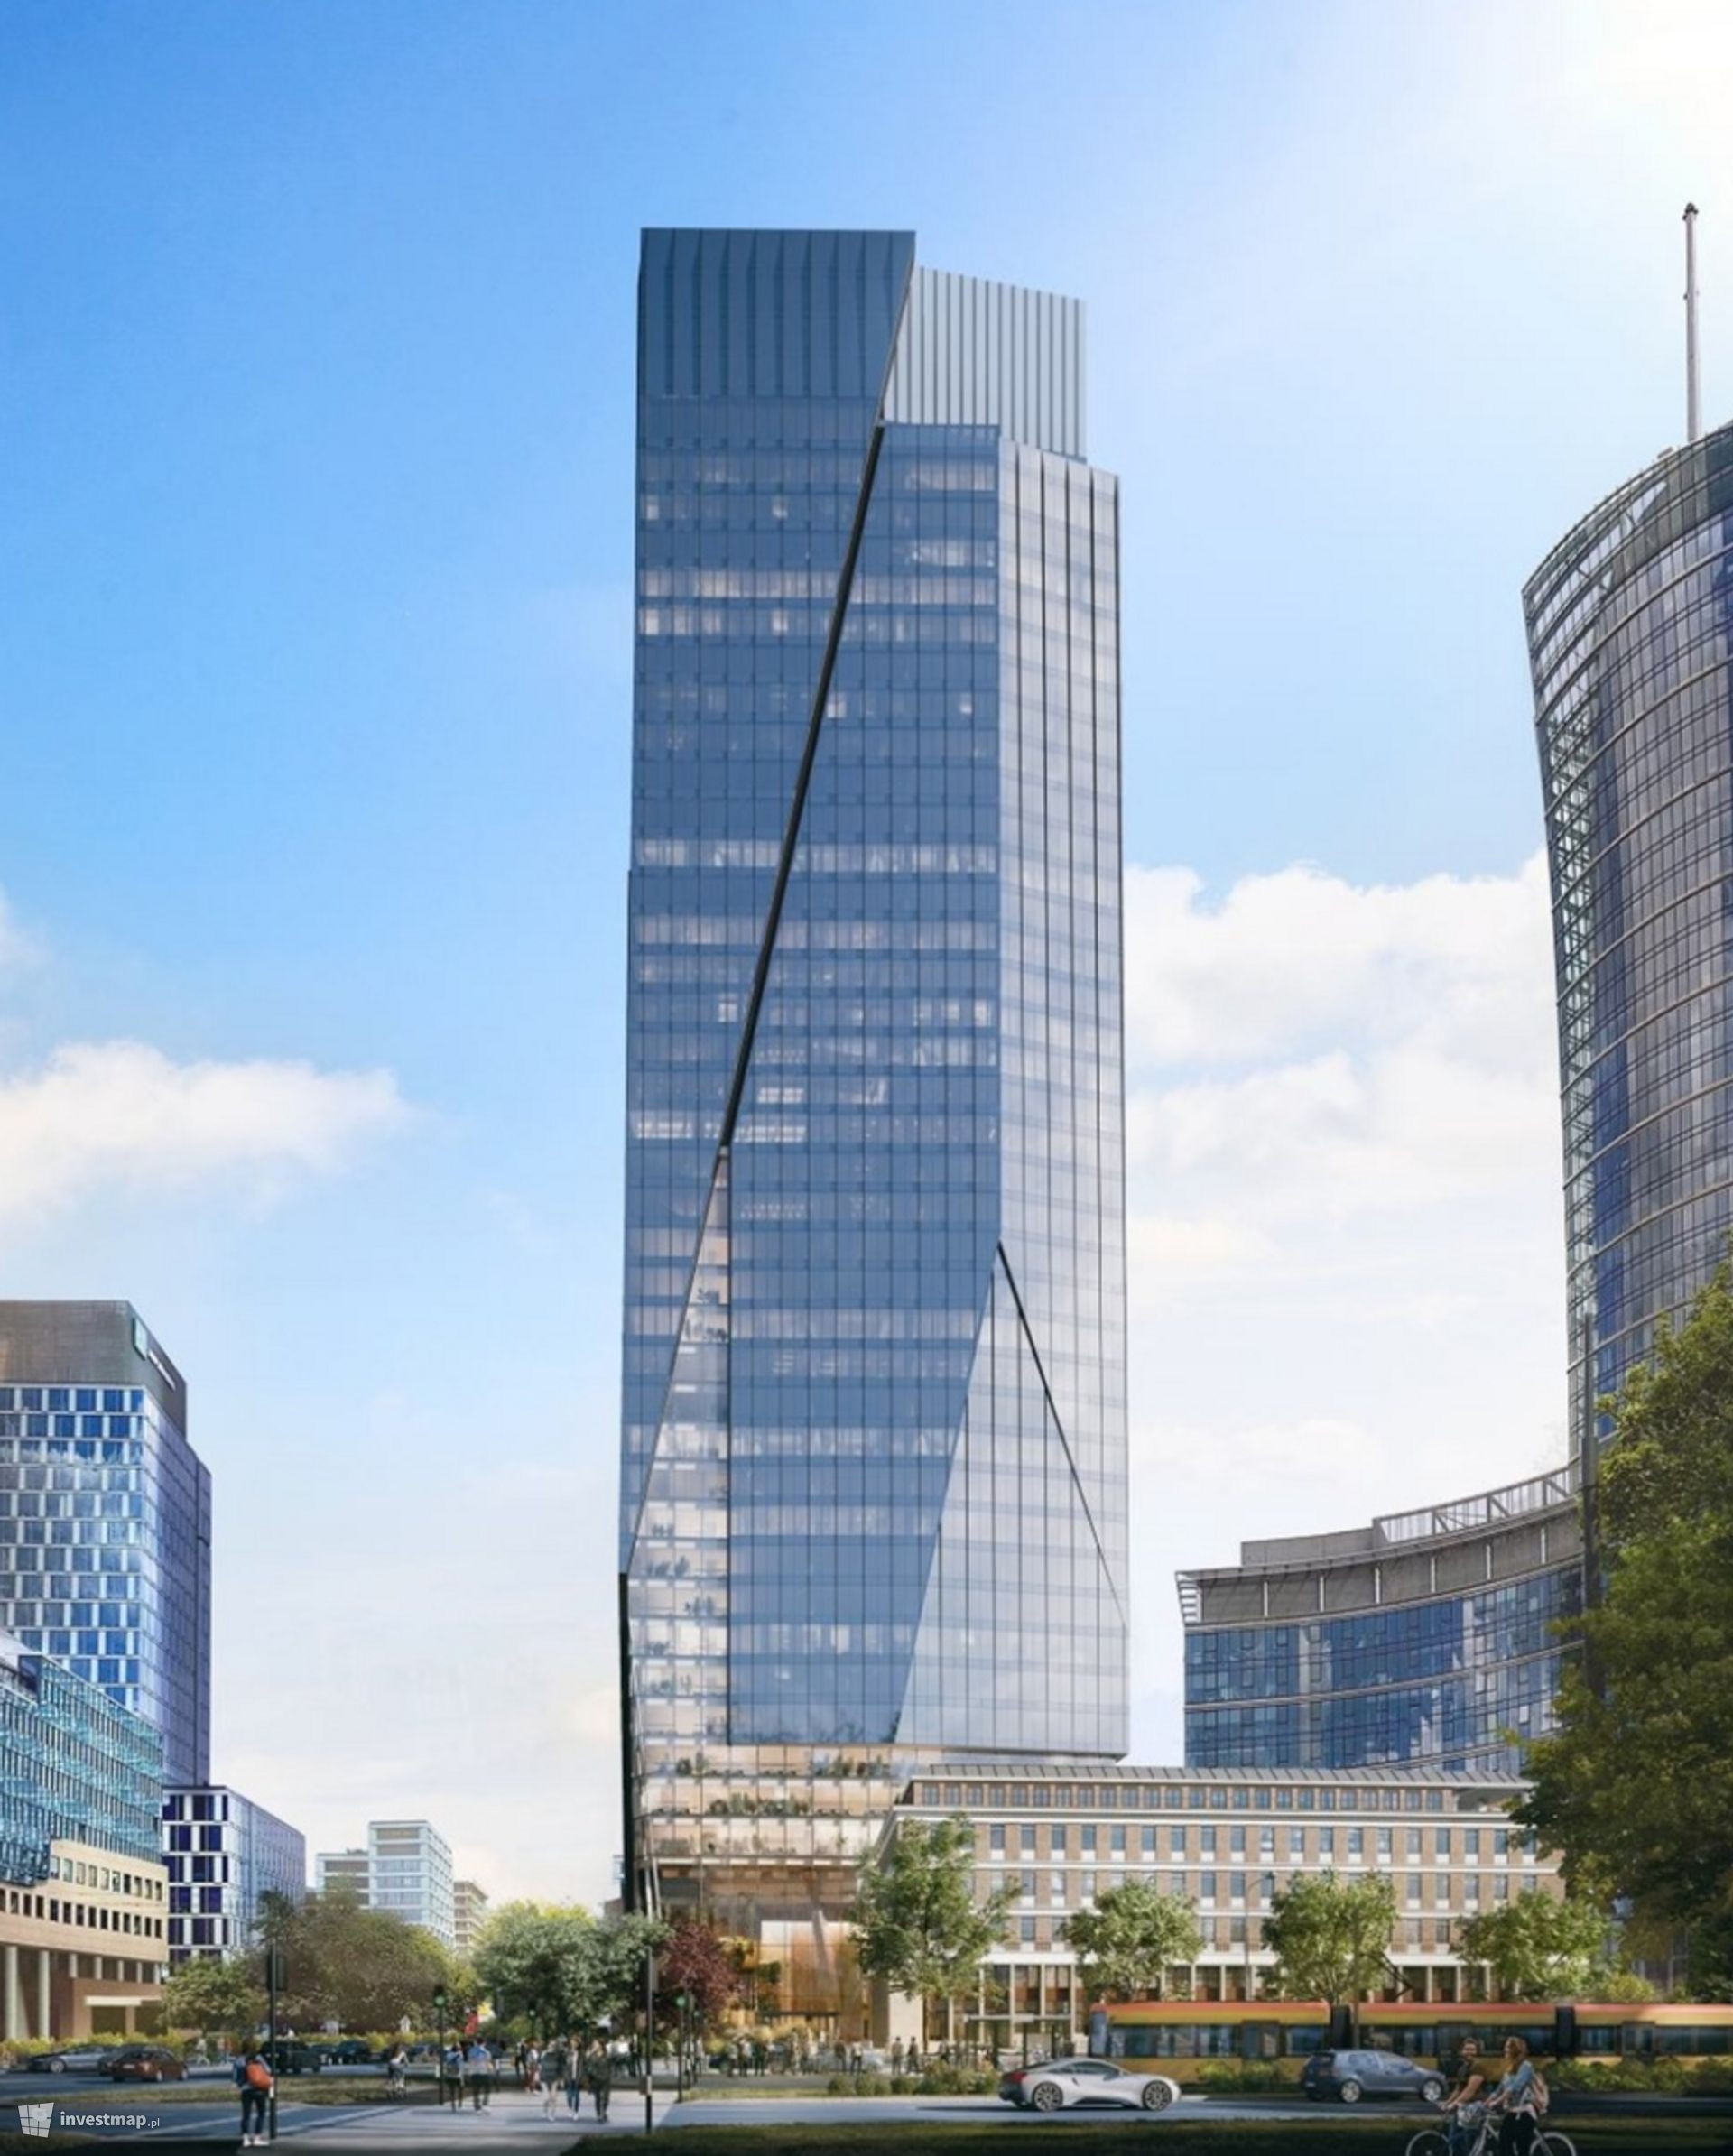 W centrum Warszawy trwa budowa nowego, 174-metrowego biurowca The Bridge 